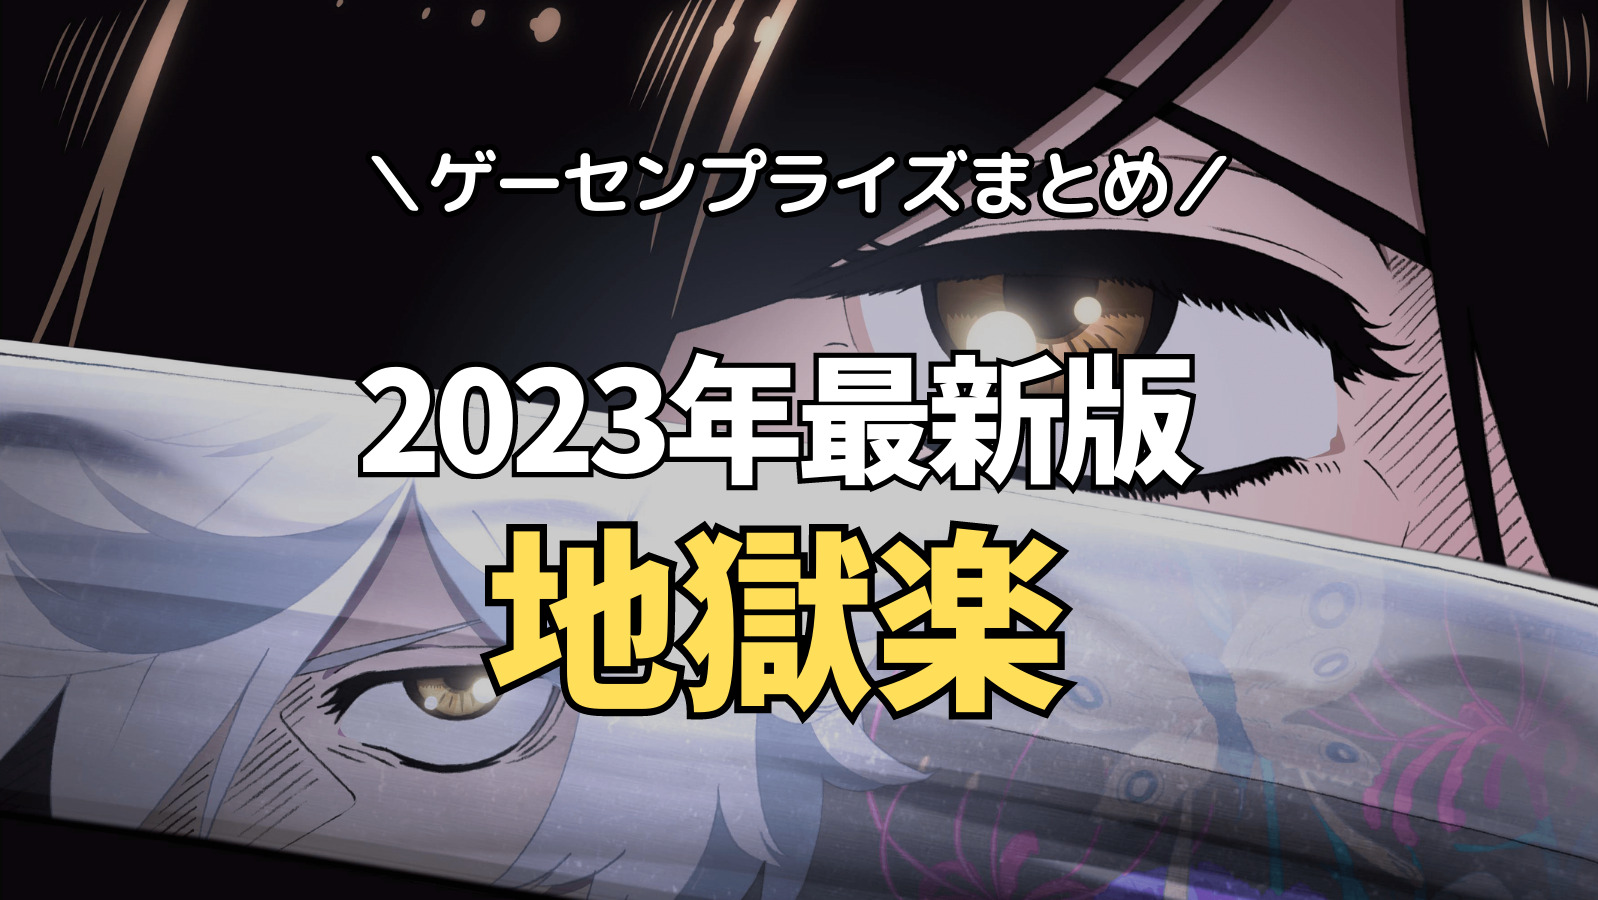 【2023年最新版】地獄楽(じごくらく)のゲーセンプライズ入荷情報【クレーンゲーム景品】